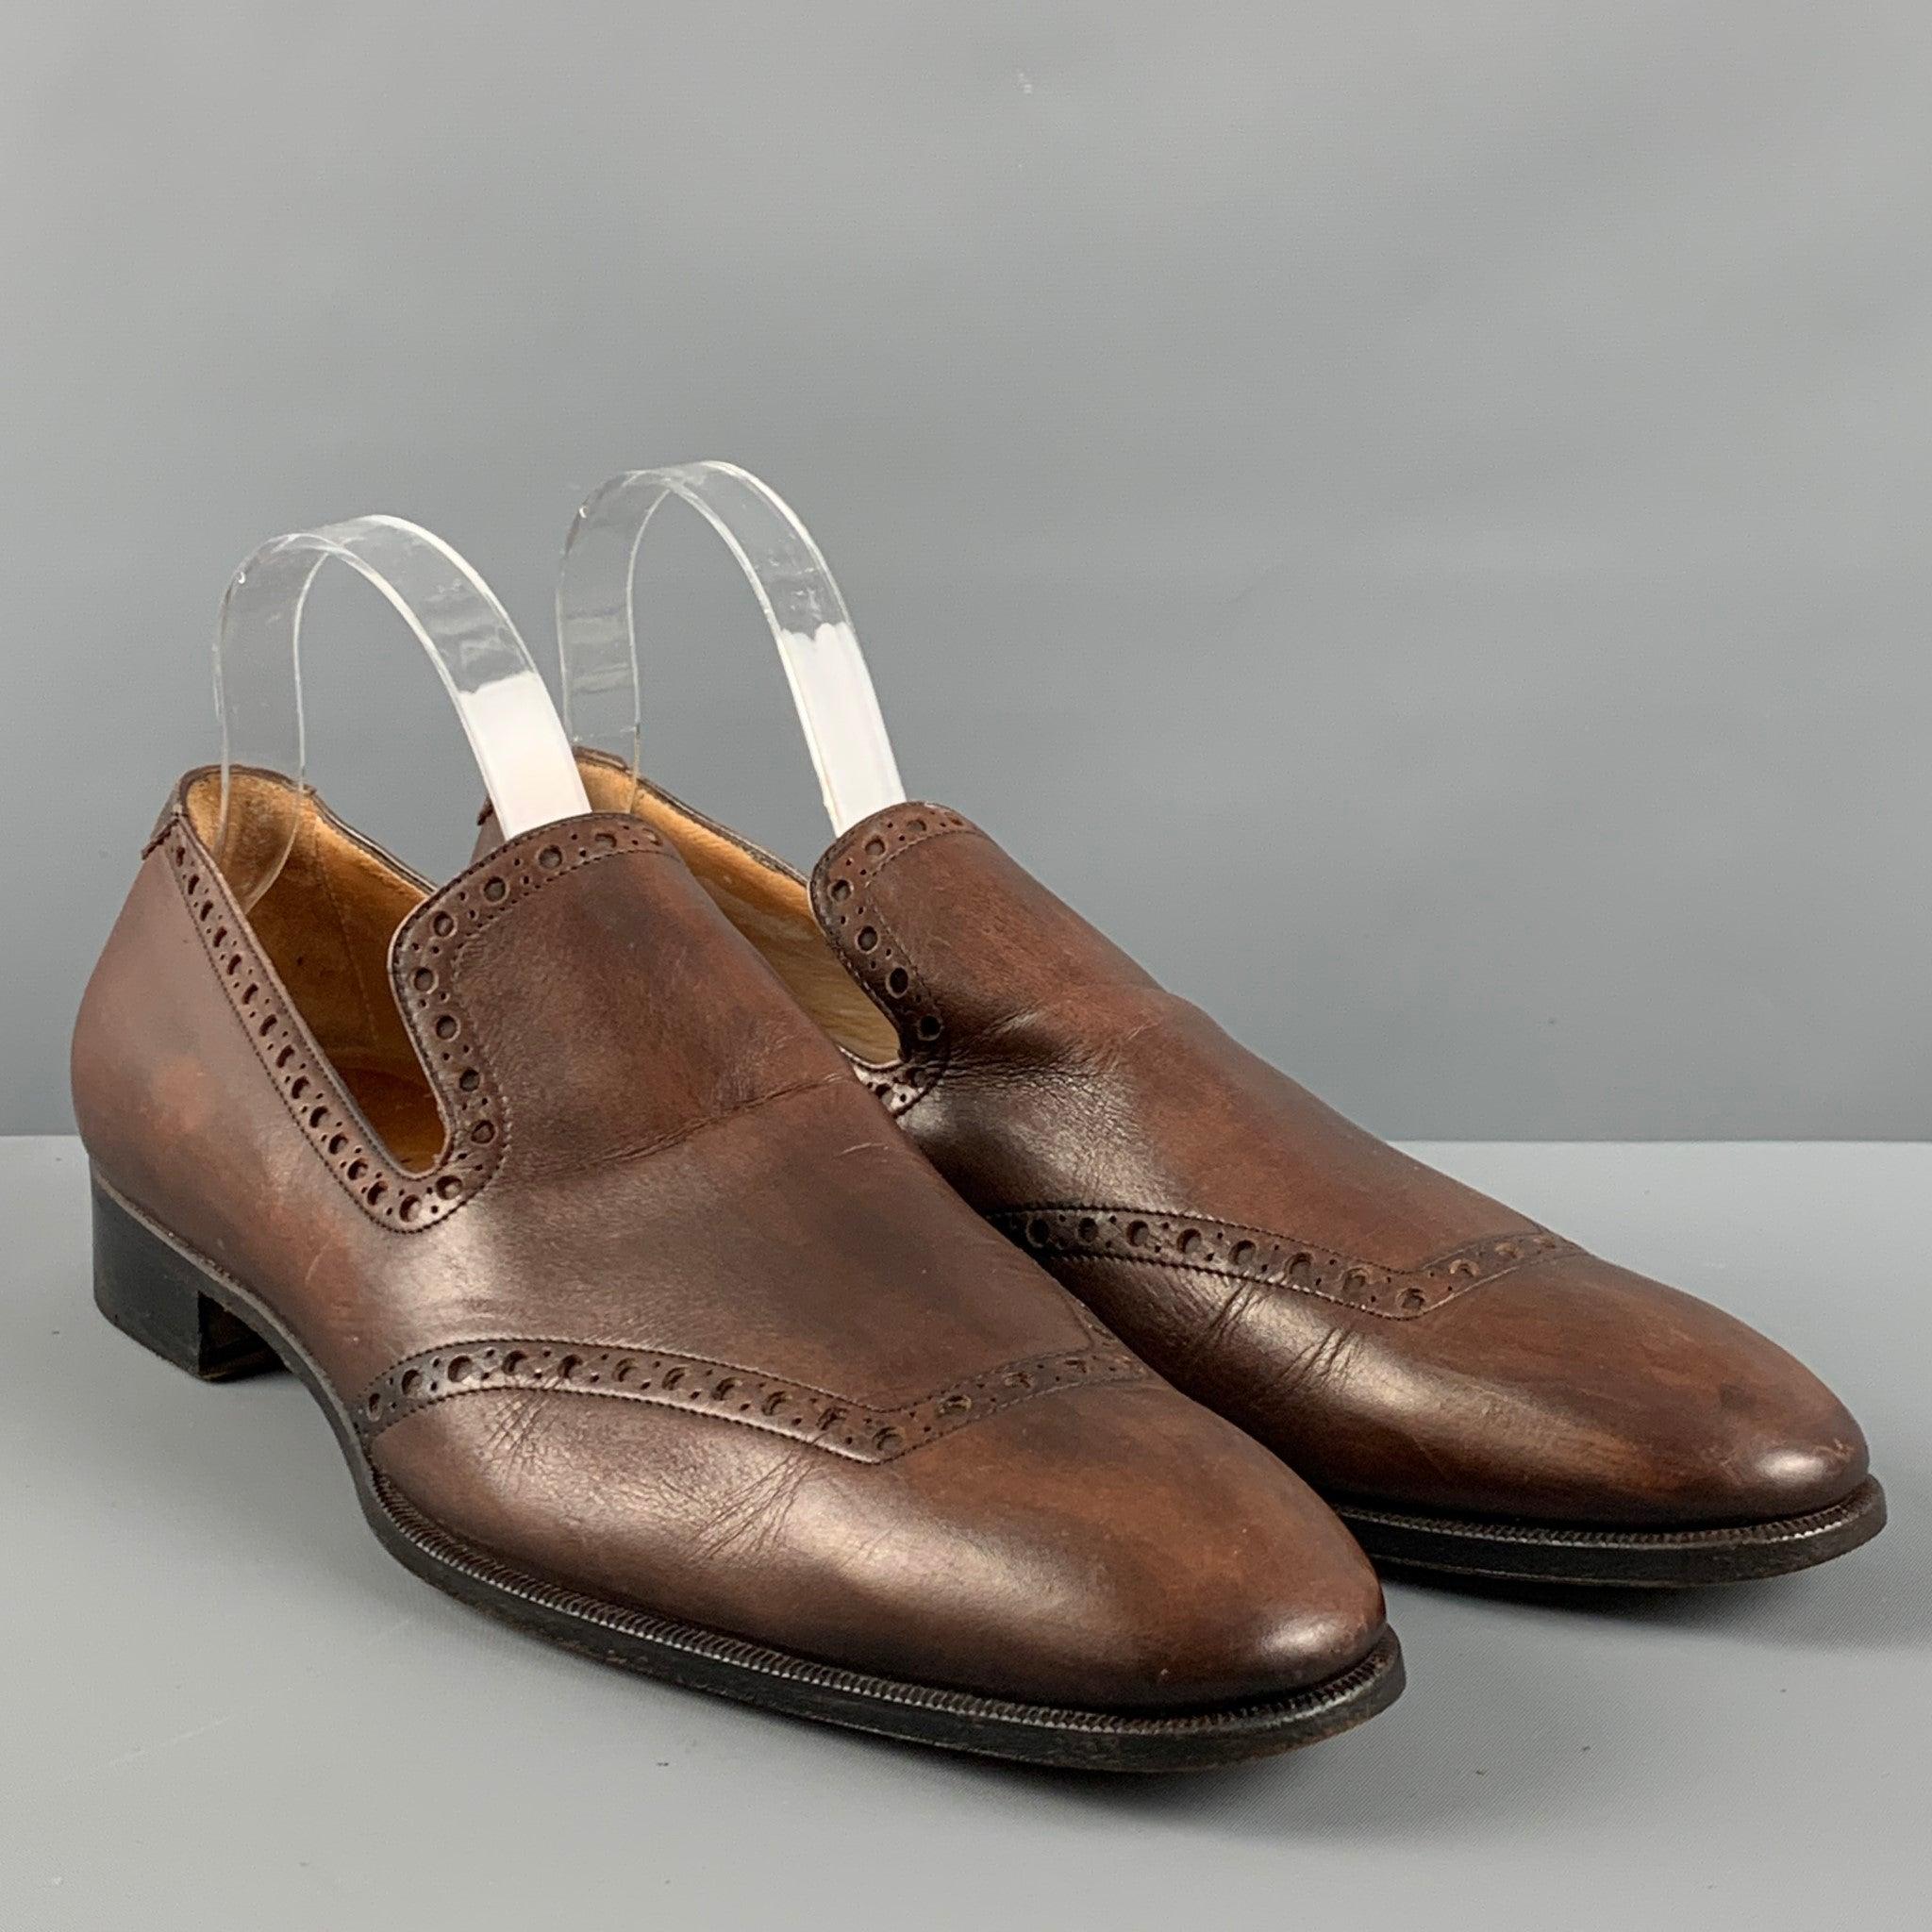 YVES SAINT LAURENT Schuhe aus braunem, perforiertem Leder mit CAP-Zehe und Slip-on-Stil. Made in Italy. sehr guter gebrauchter Zustand. Mäßige Gebrauchsspuren. 

Markiert:   0214 43Außensohle: 12,75 Zoll  x 4,25 Zoll  
  
  
 
Referenz: